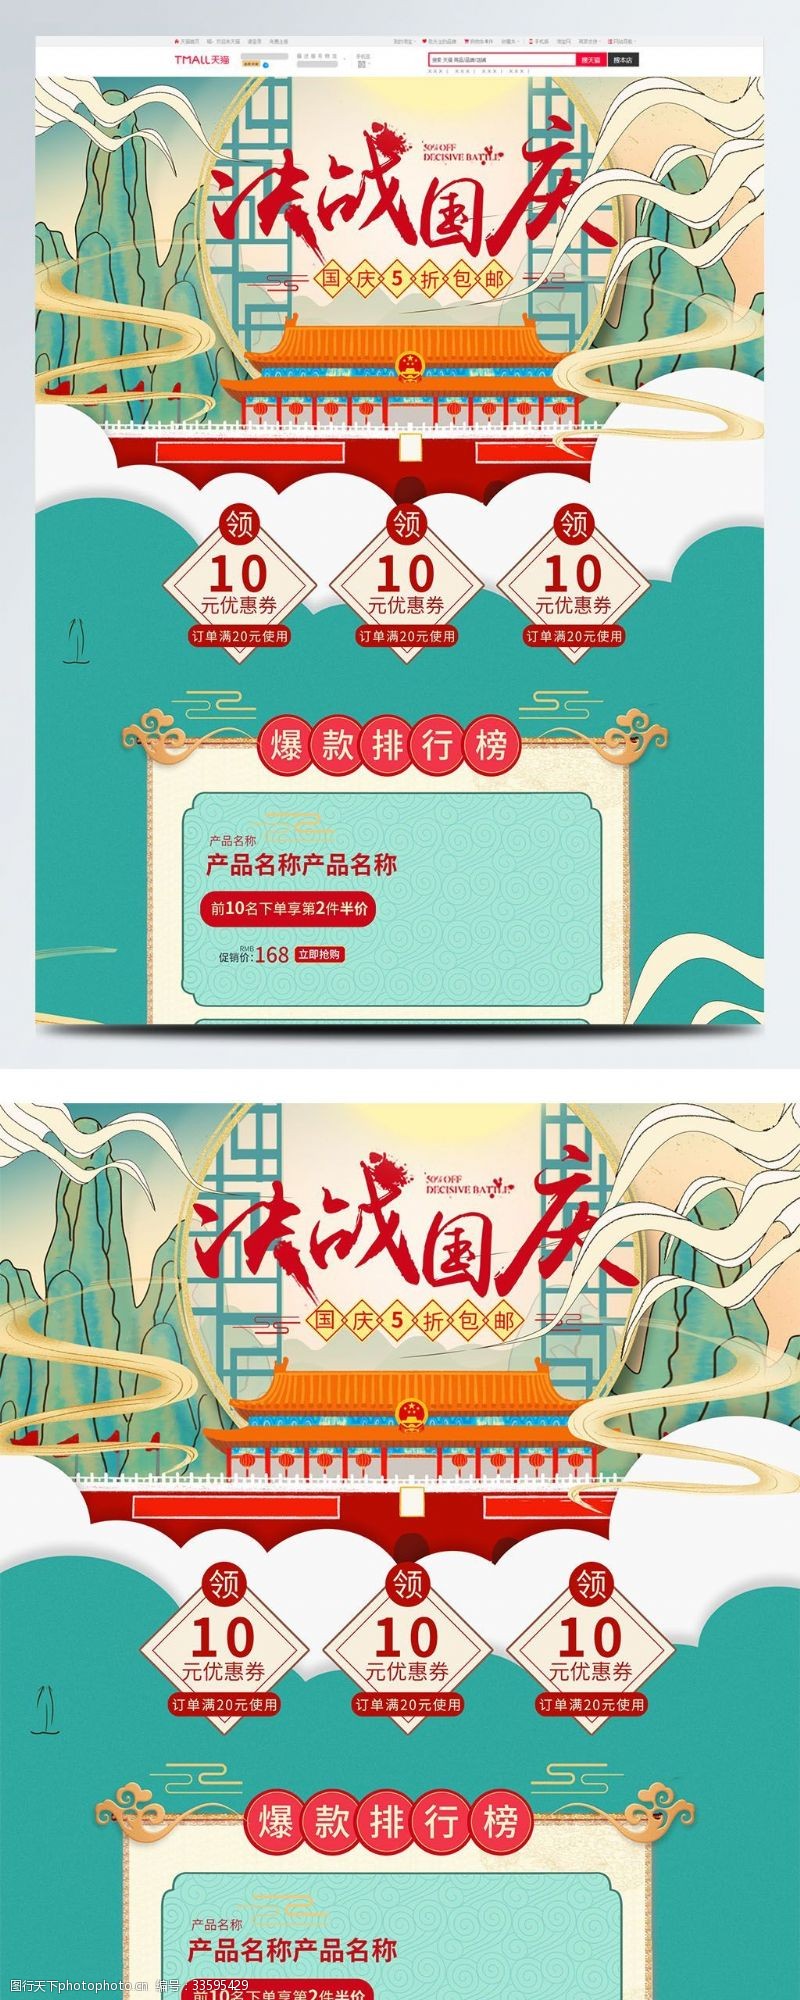 全场商品5折蓝色中国风电商促销国庆大惠战淘宝首页模板